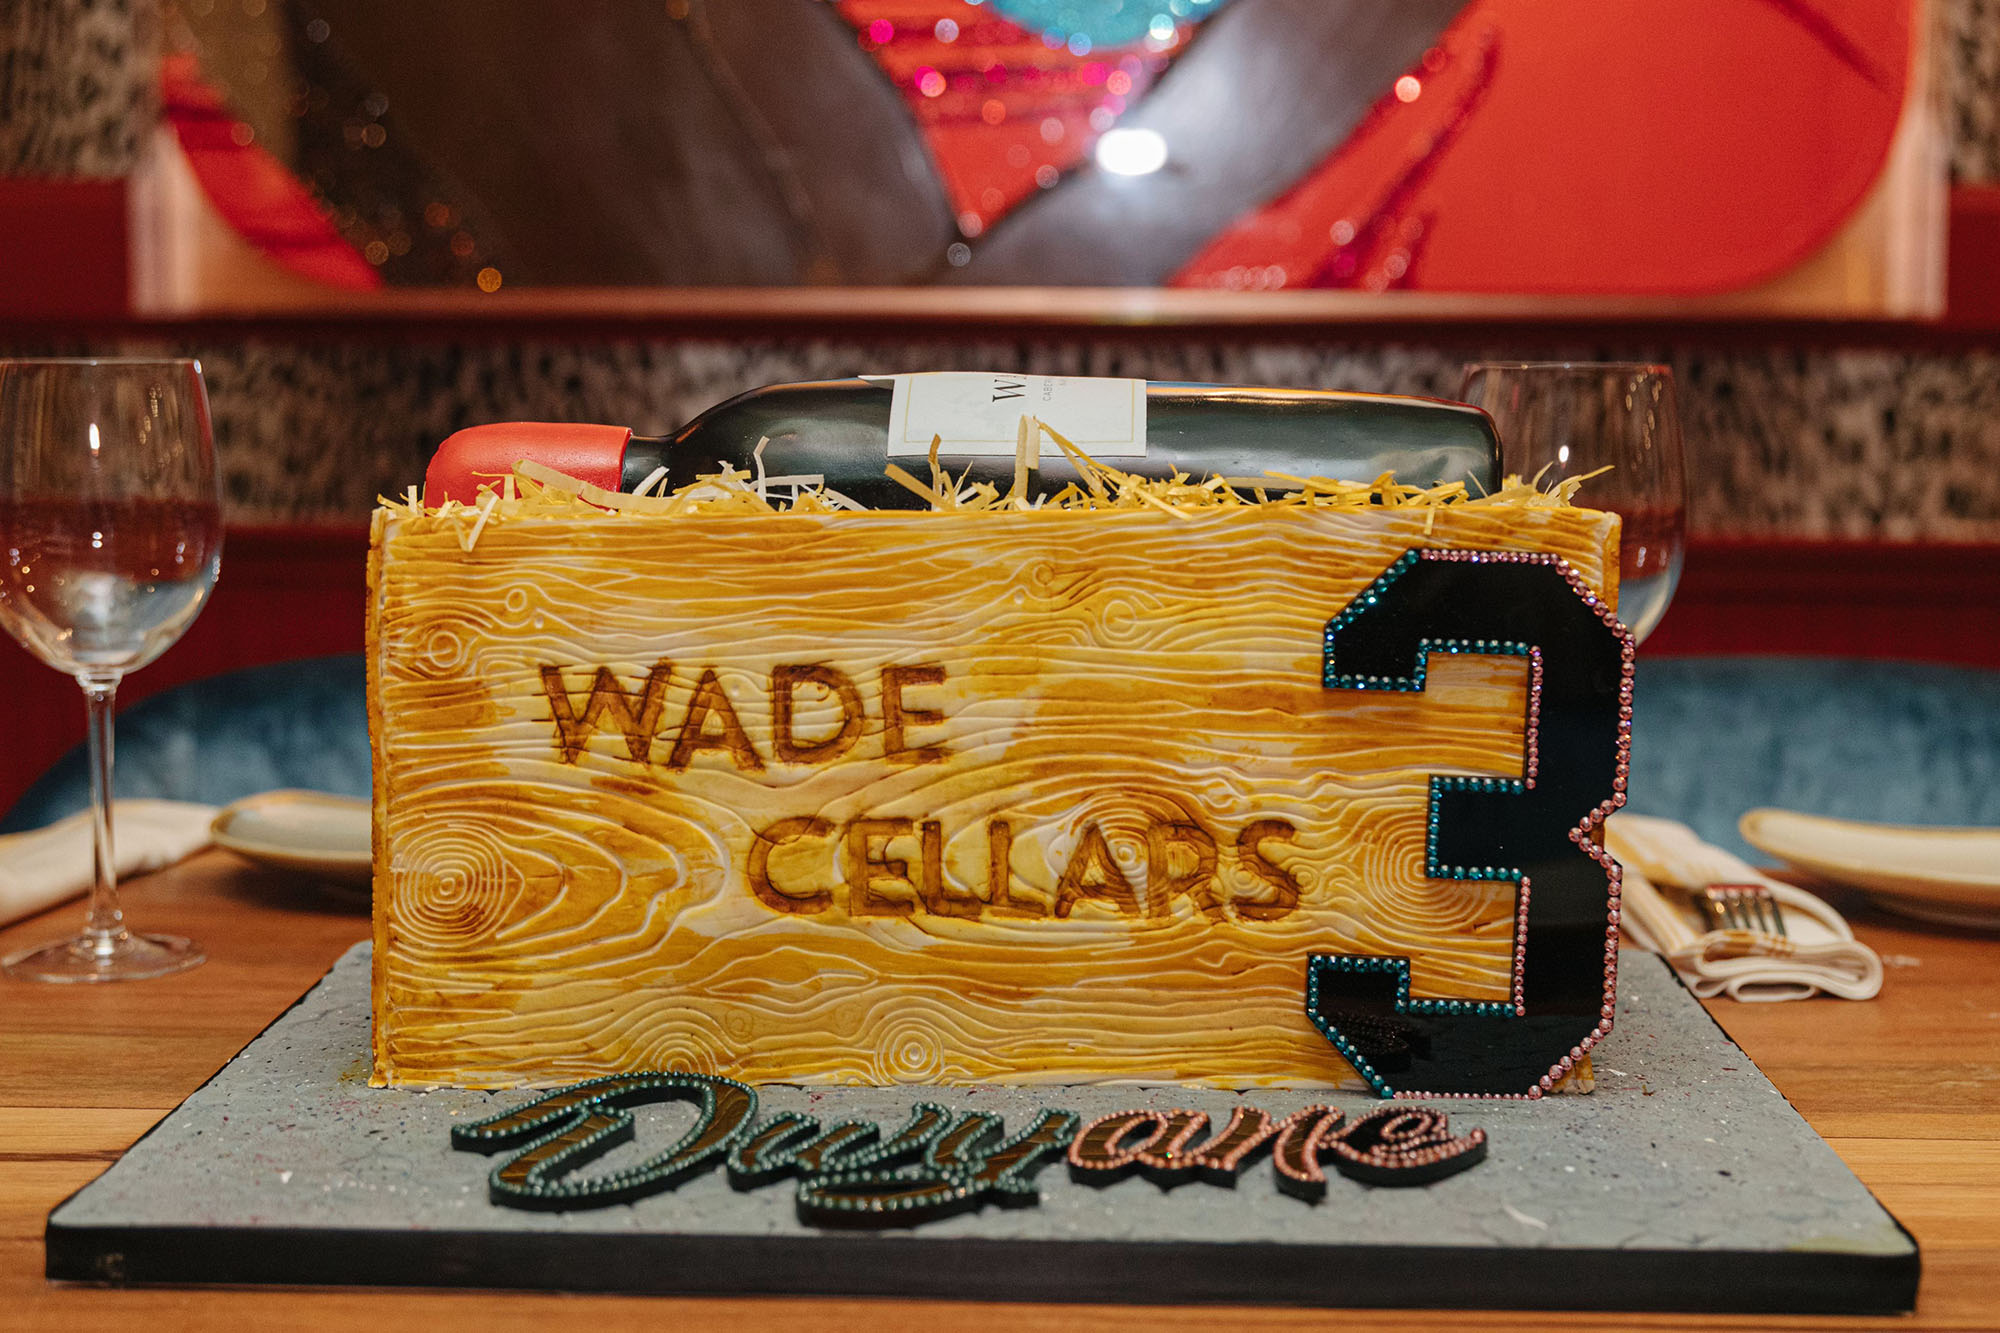 Dwyane Wade's birthday cake